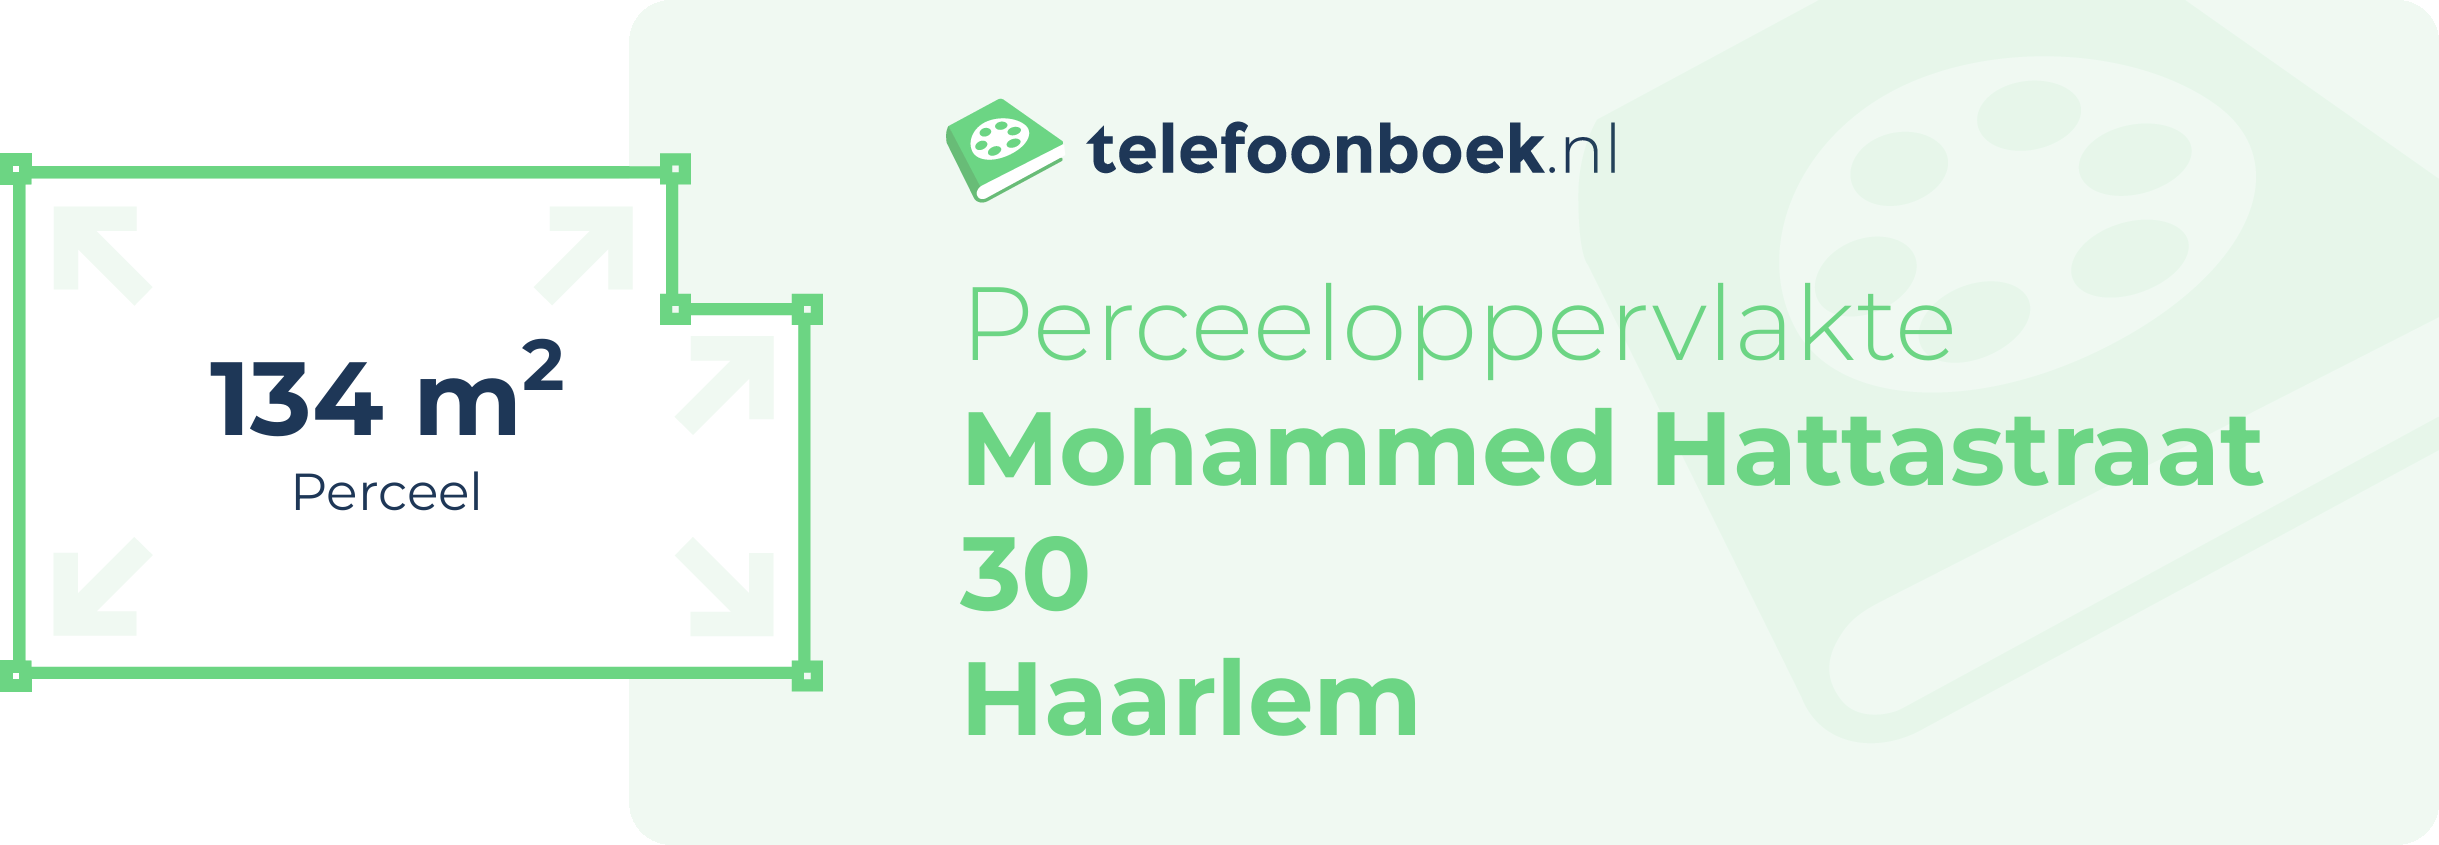 Perceeloppervlakte Mohammed Hattastraat 30 Haarlem